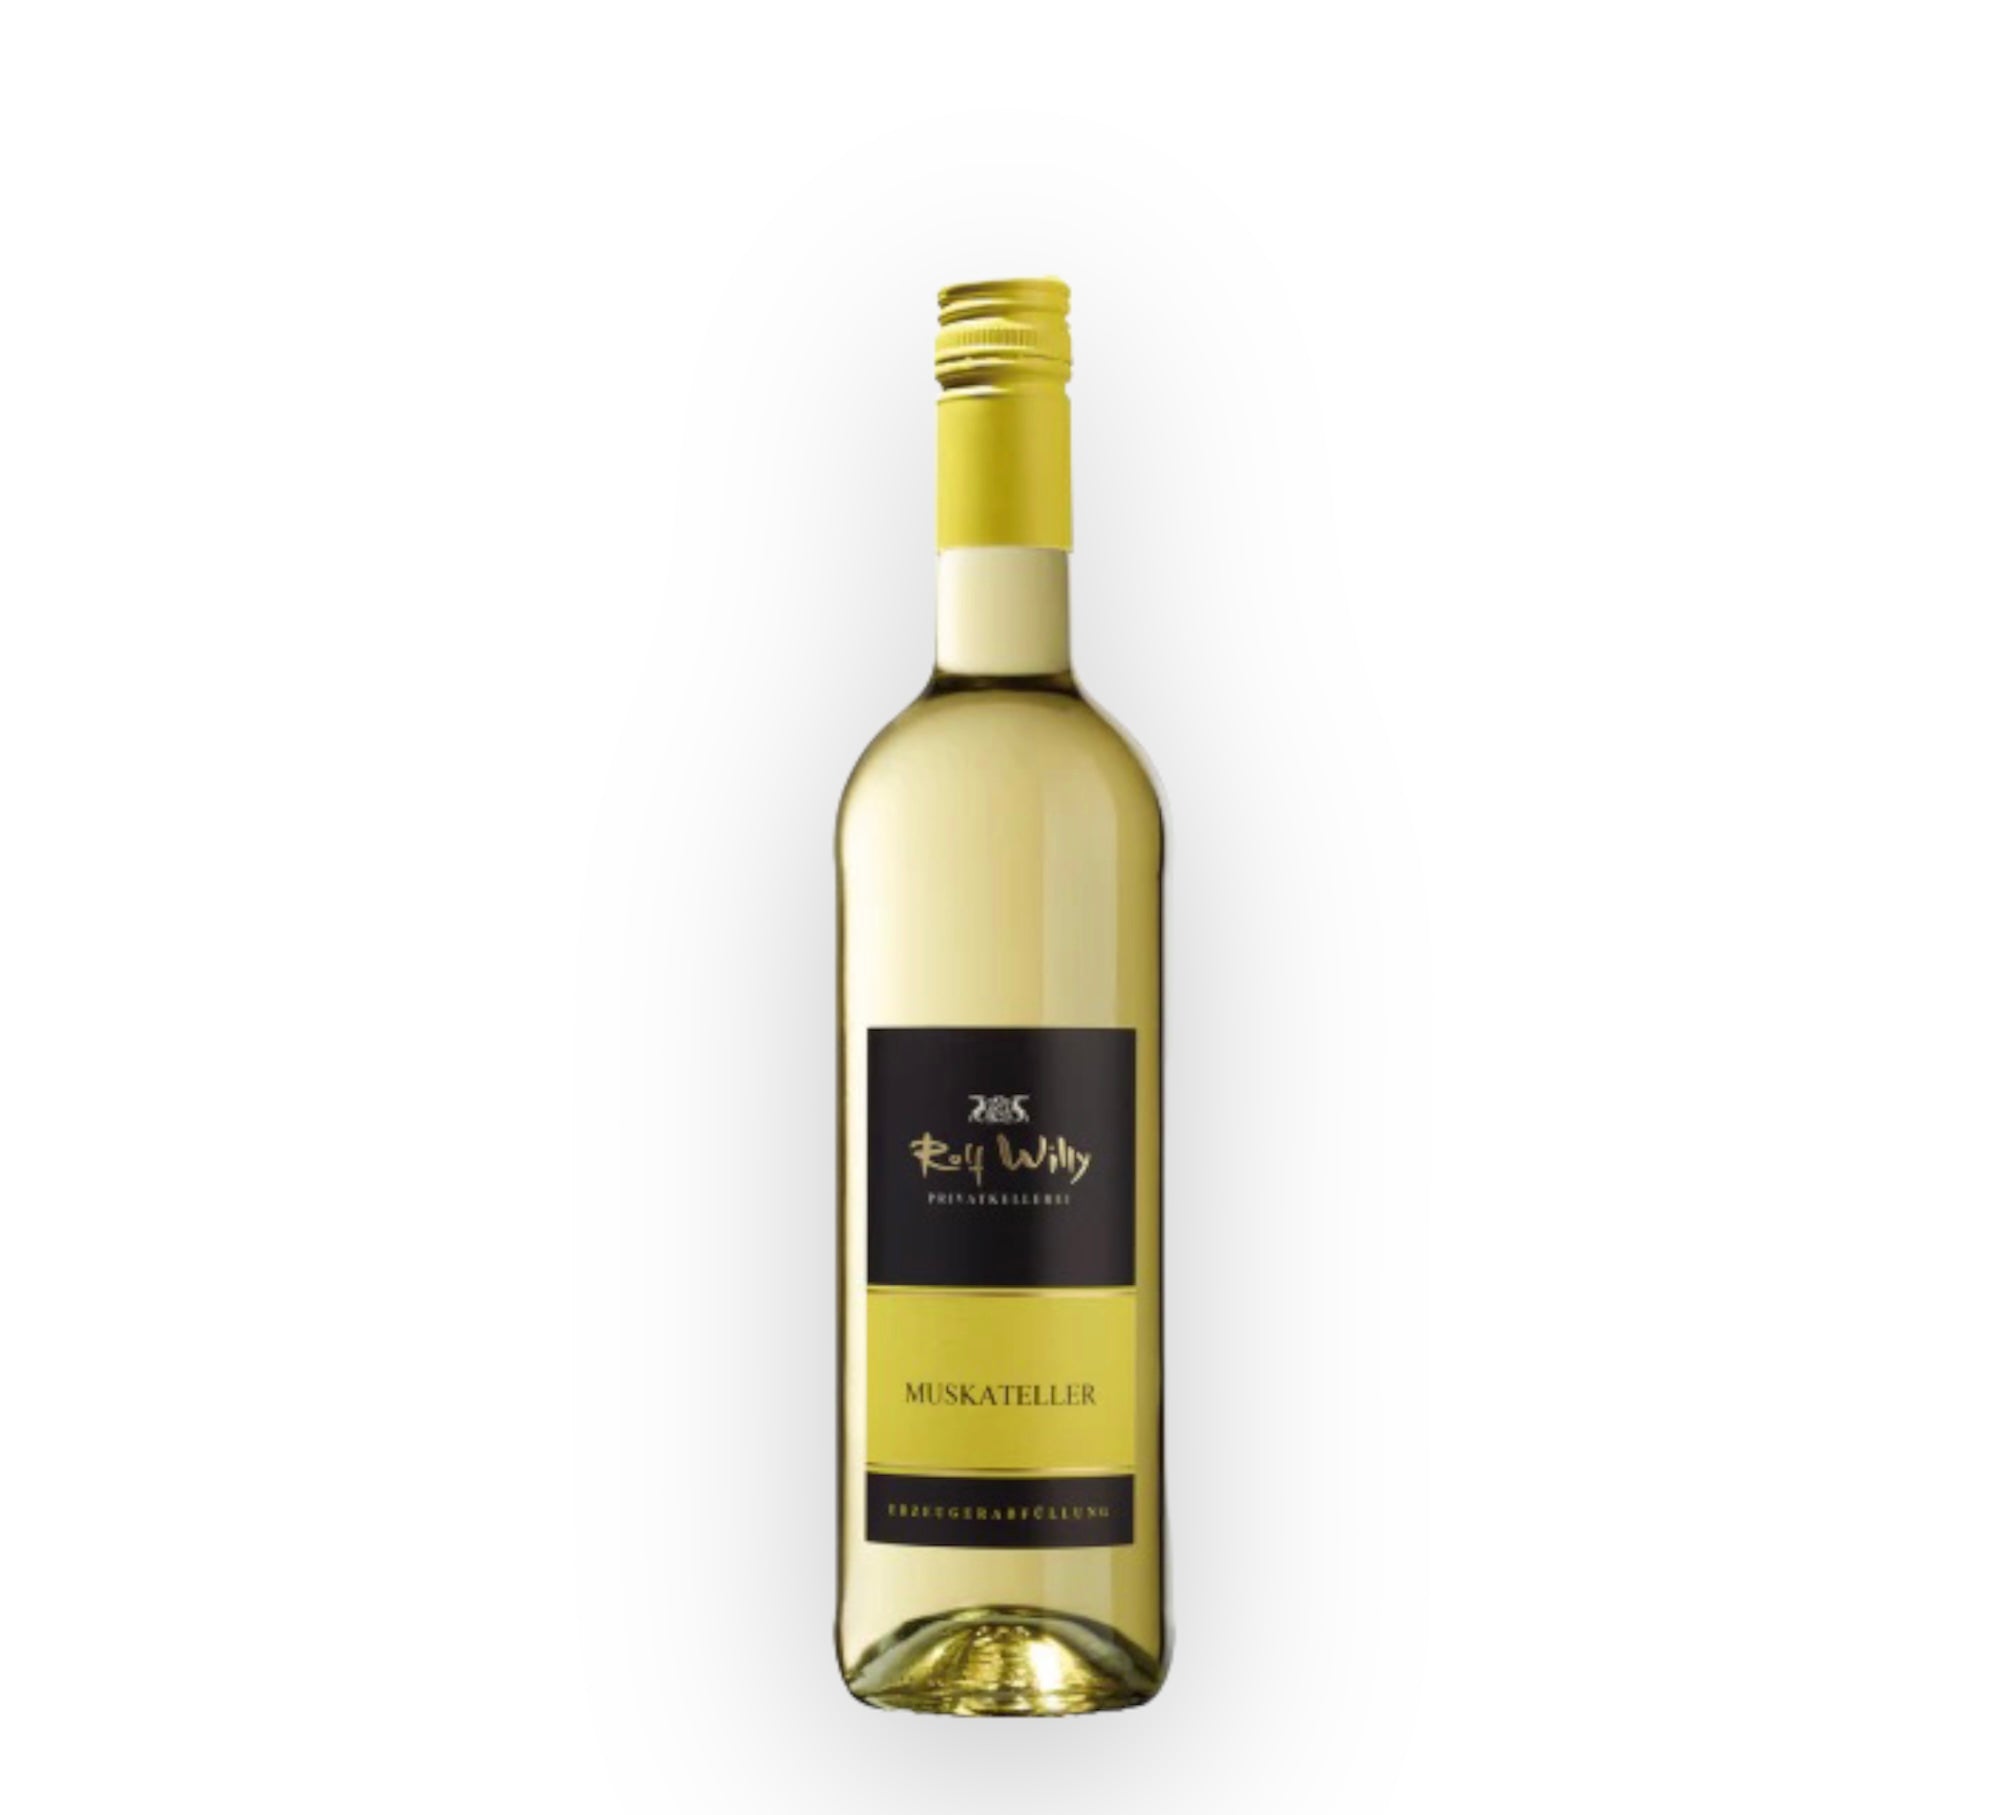 Rolf Willy Muskateller QBA 2020 Lieblich white wine 0.75l